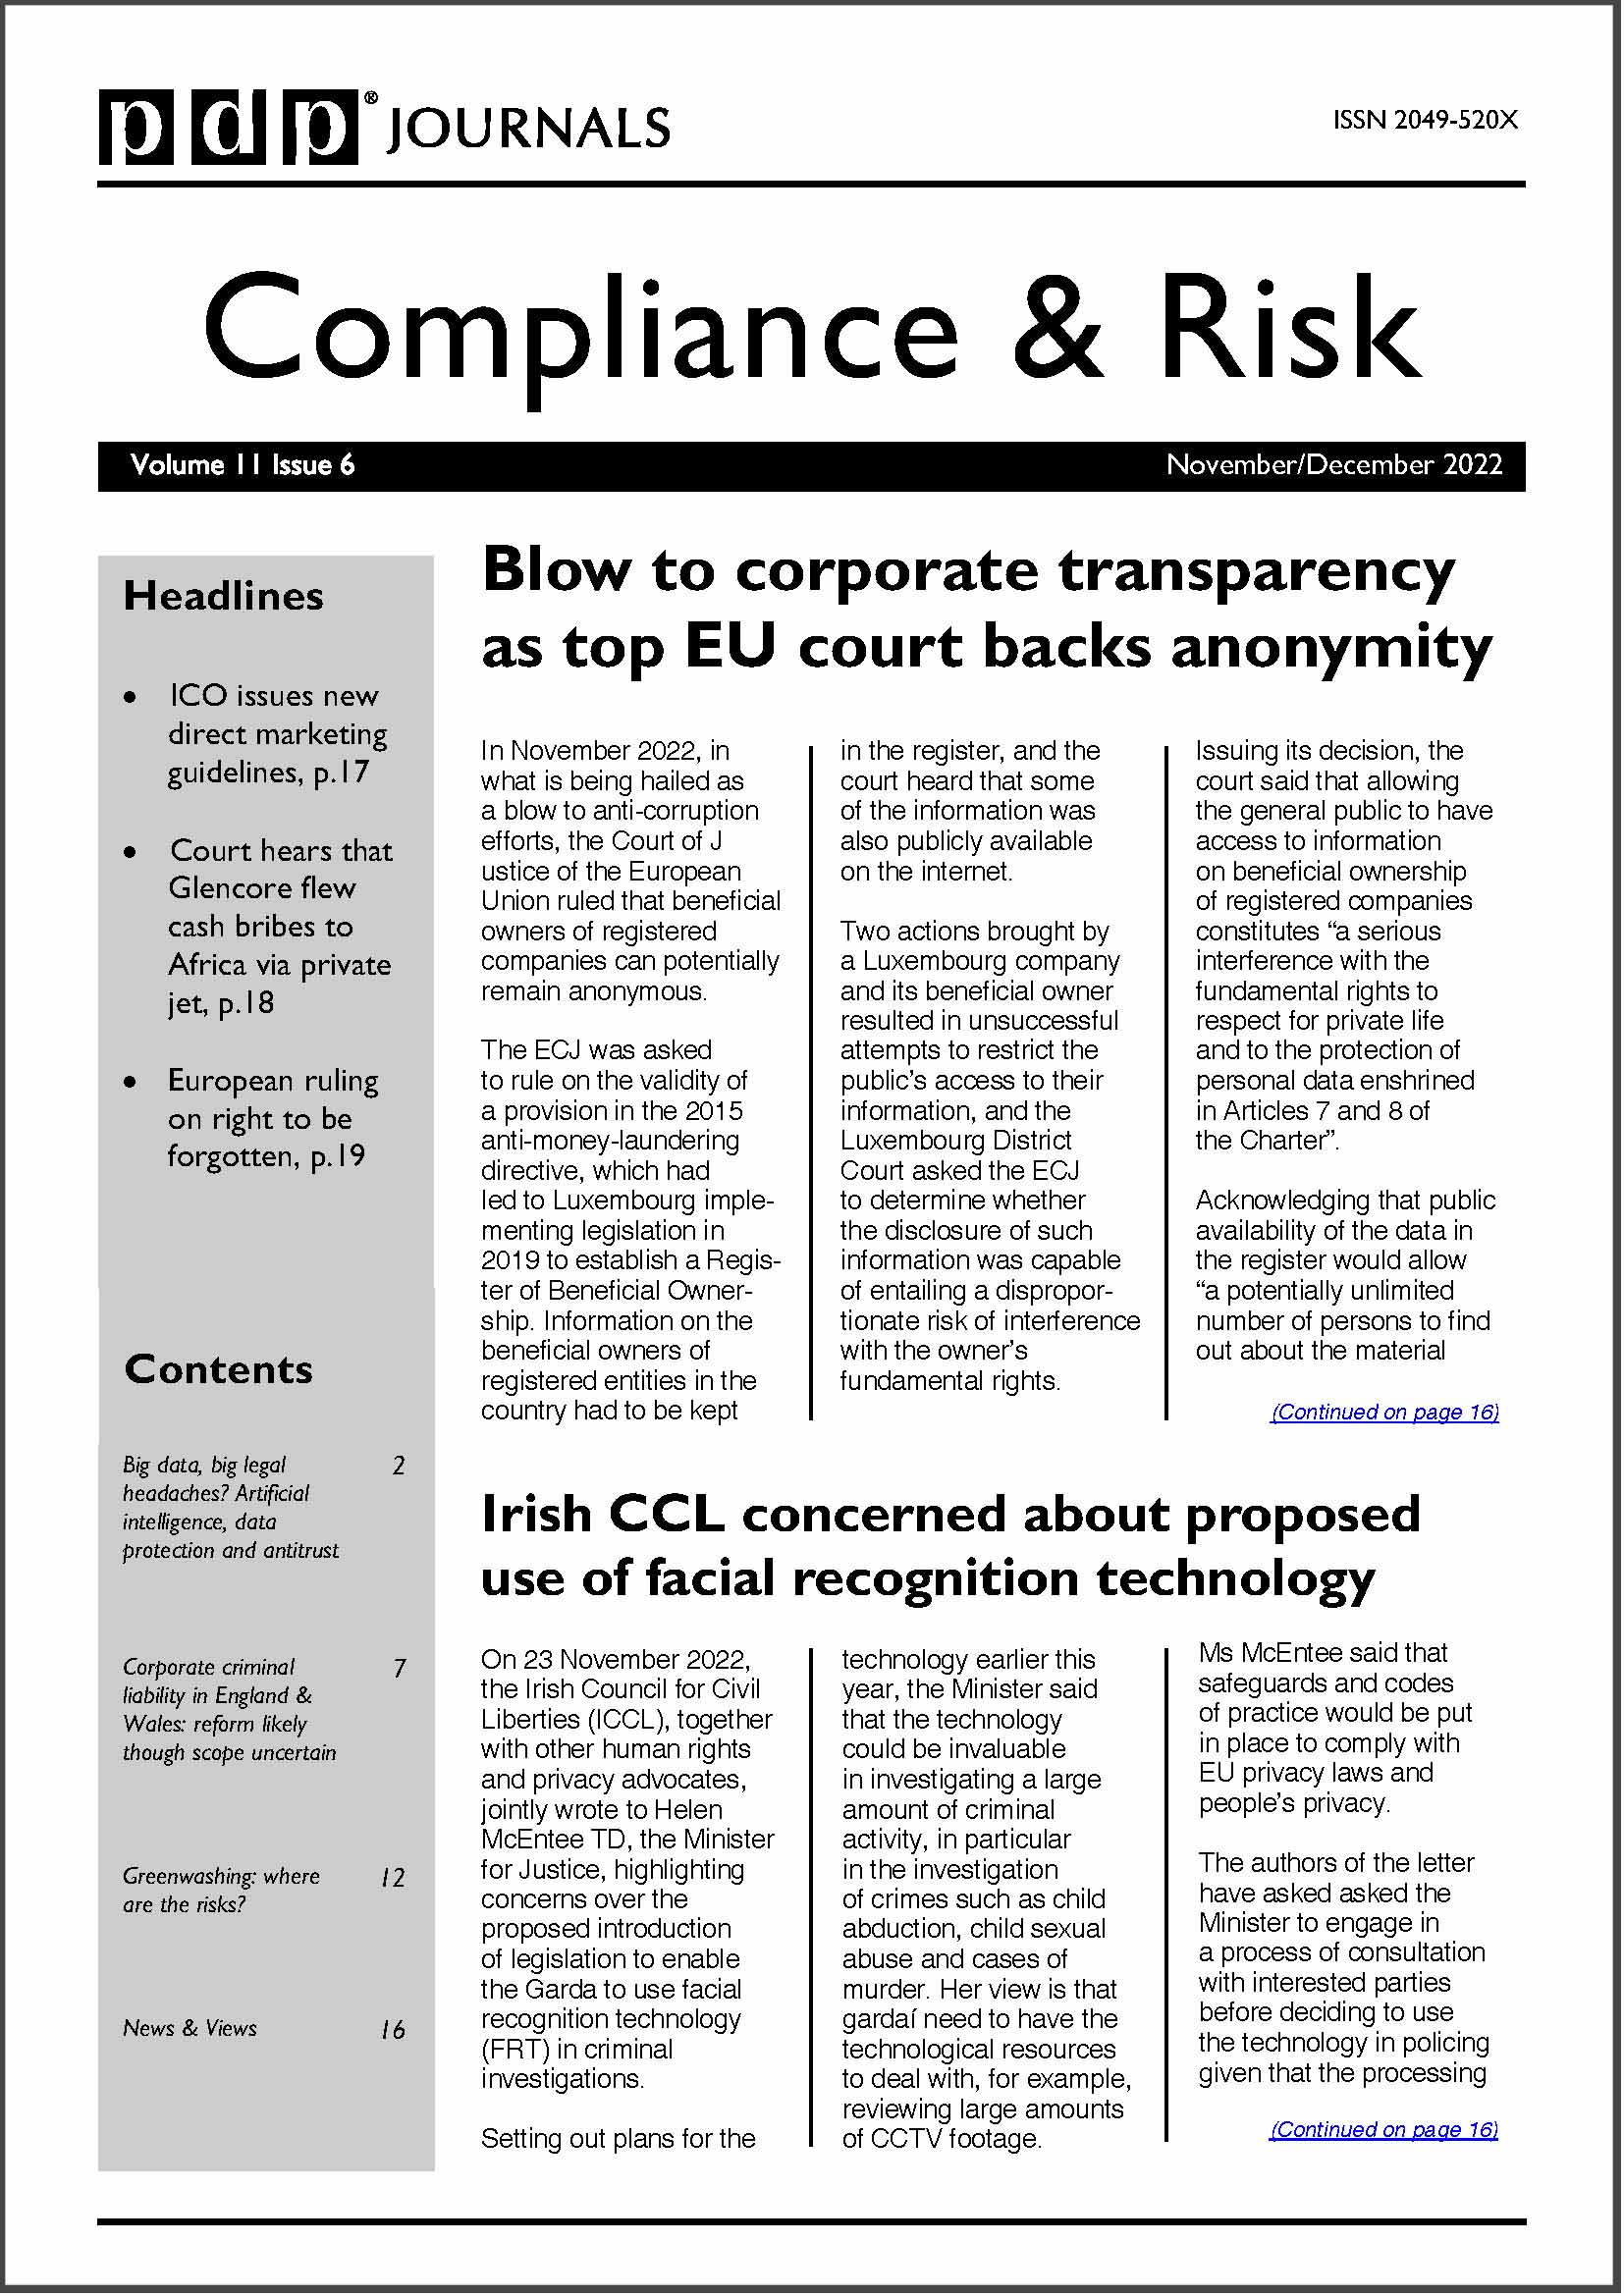 Compliance & Risk Journal